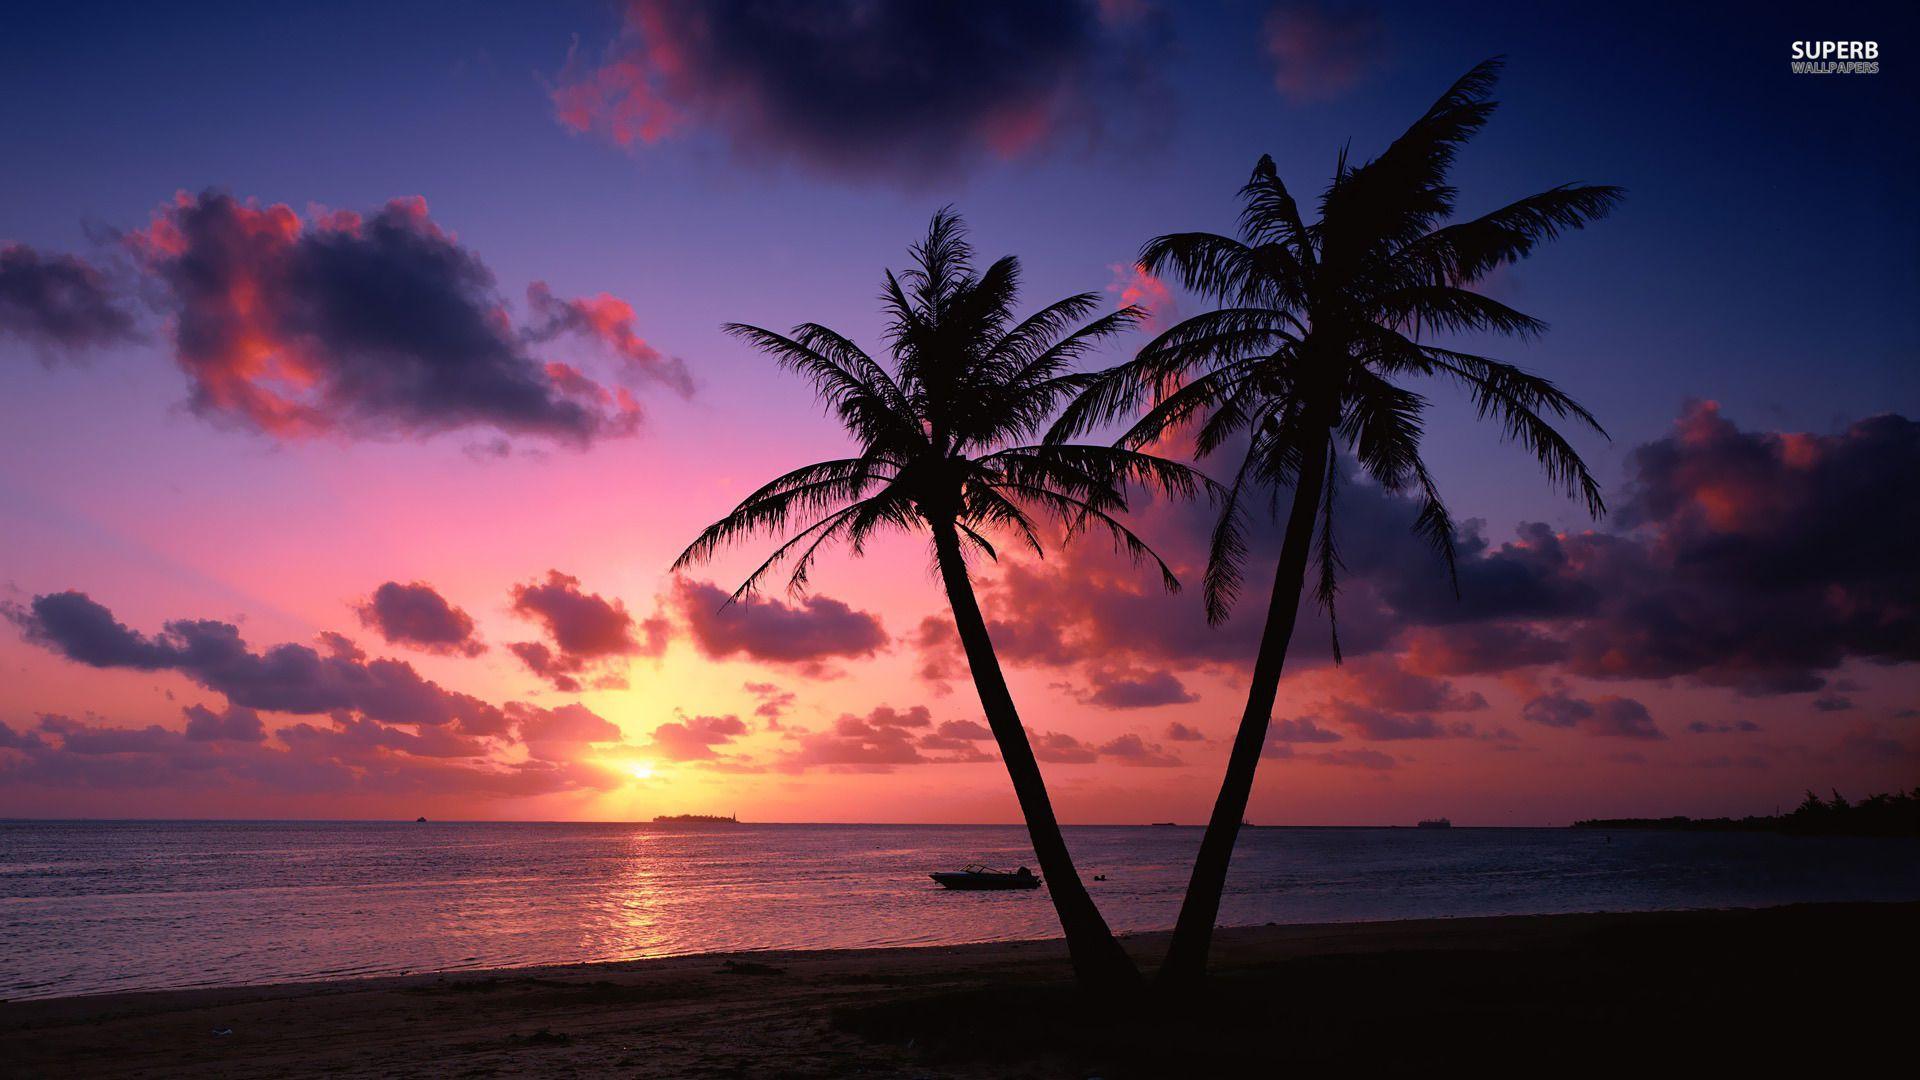 Ocean Sunset HD wallpaperx768. Sunset wallpaper, Sunset landscape, Beach sunset wallpaper